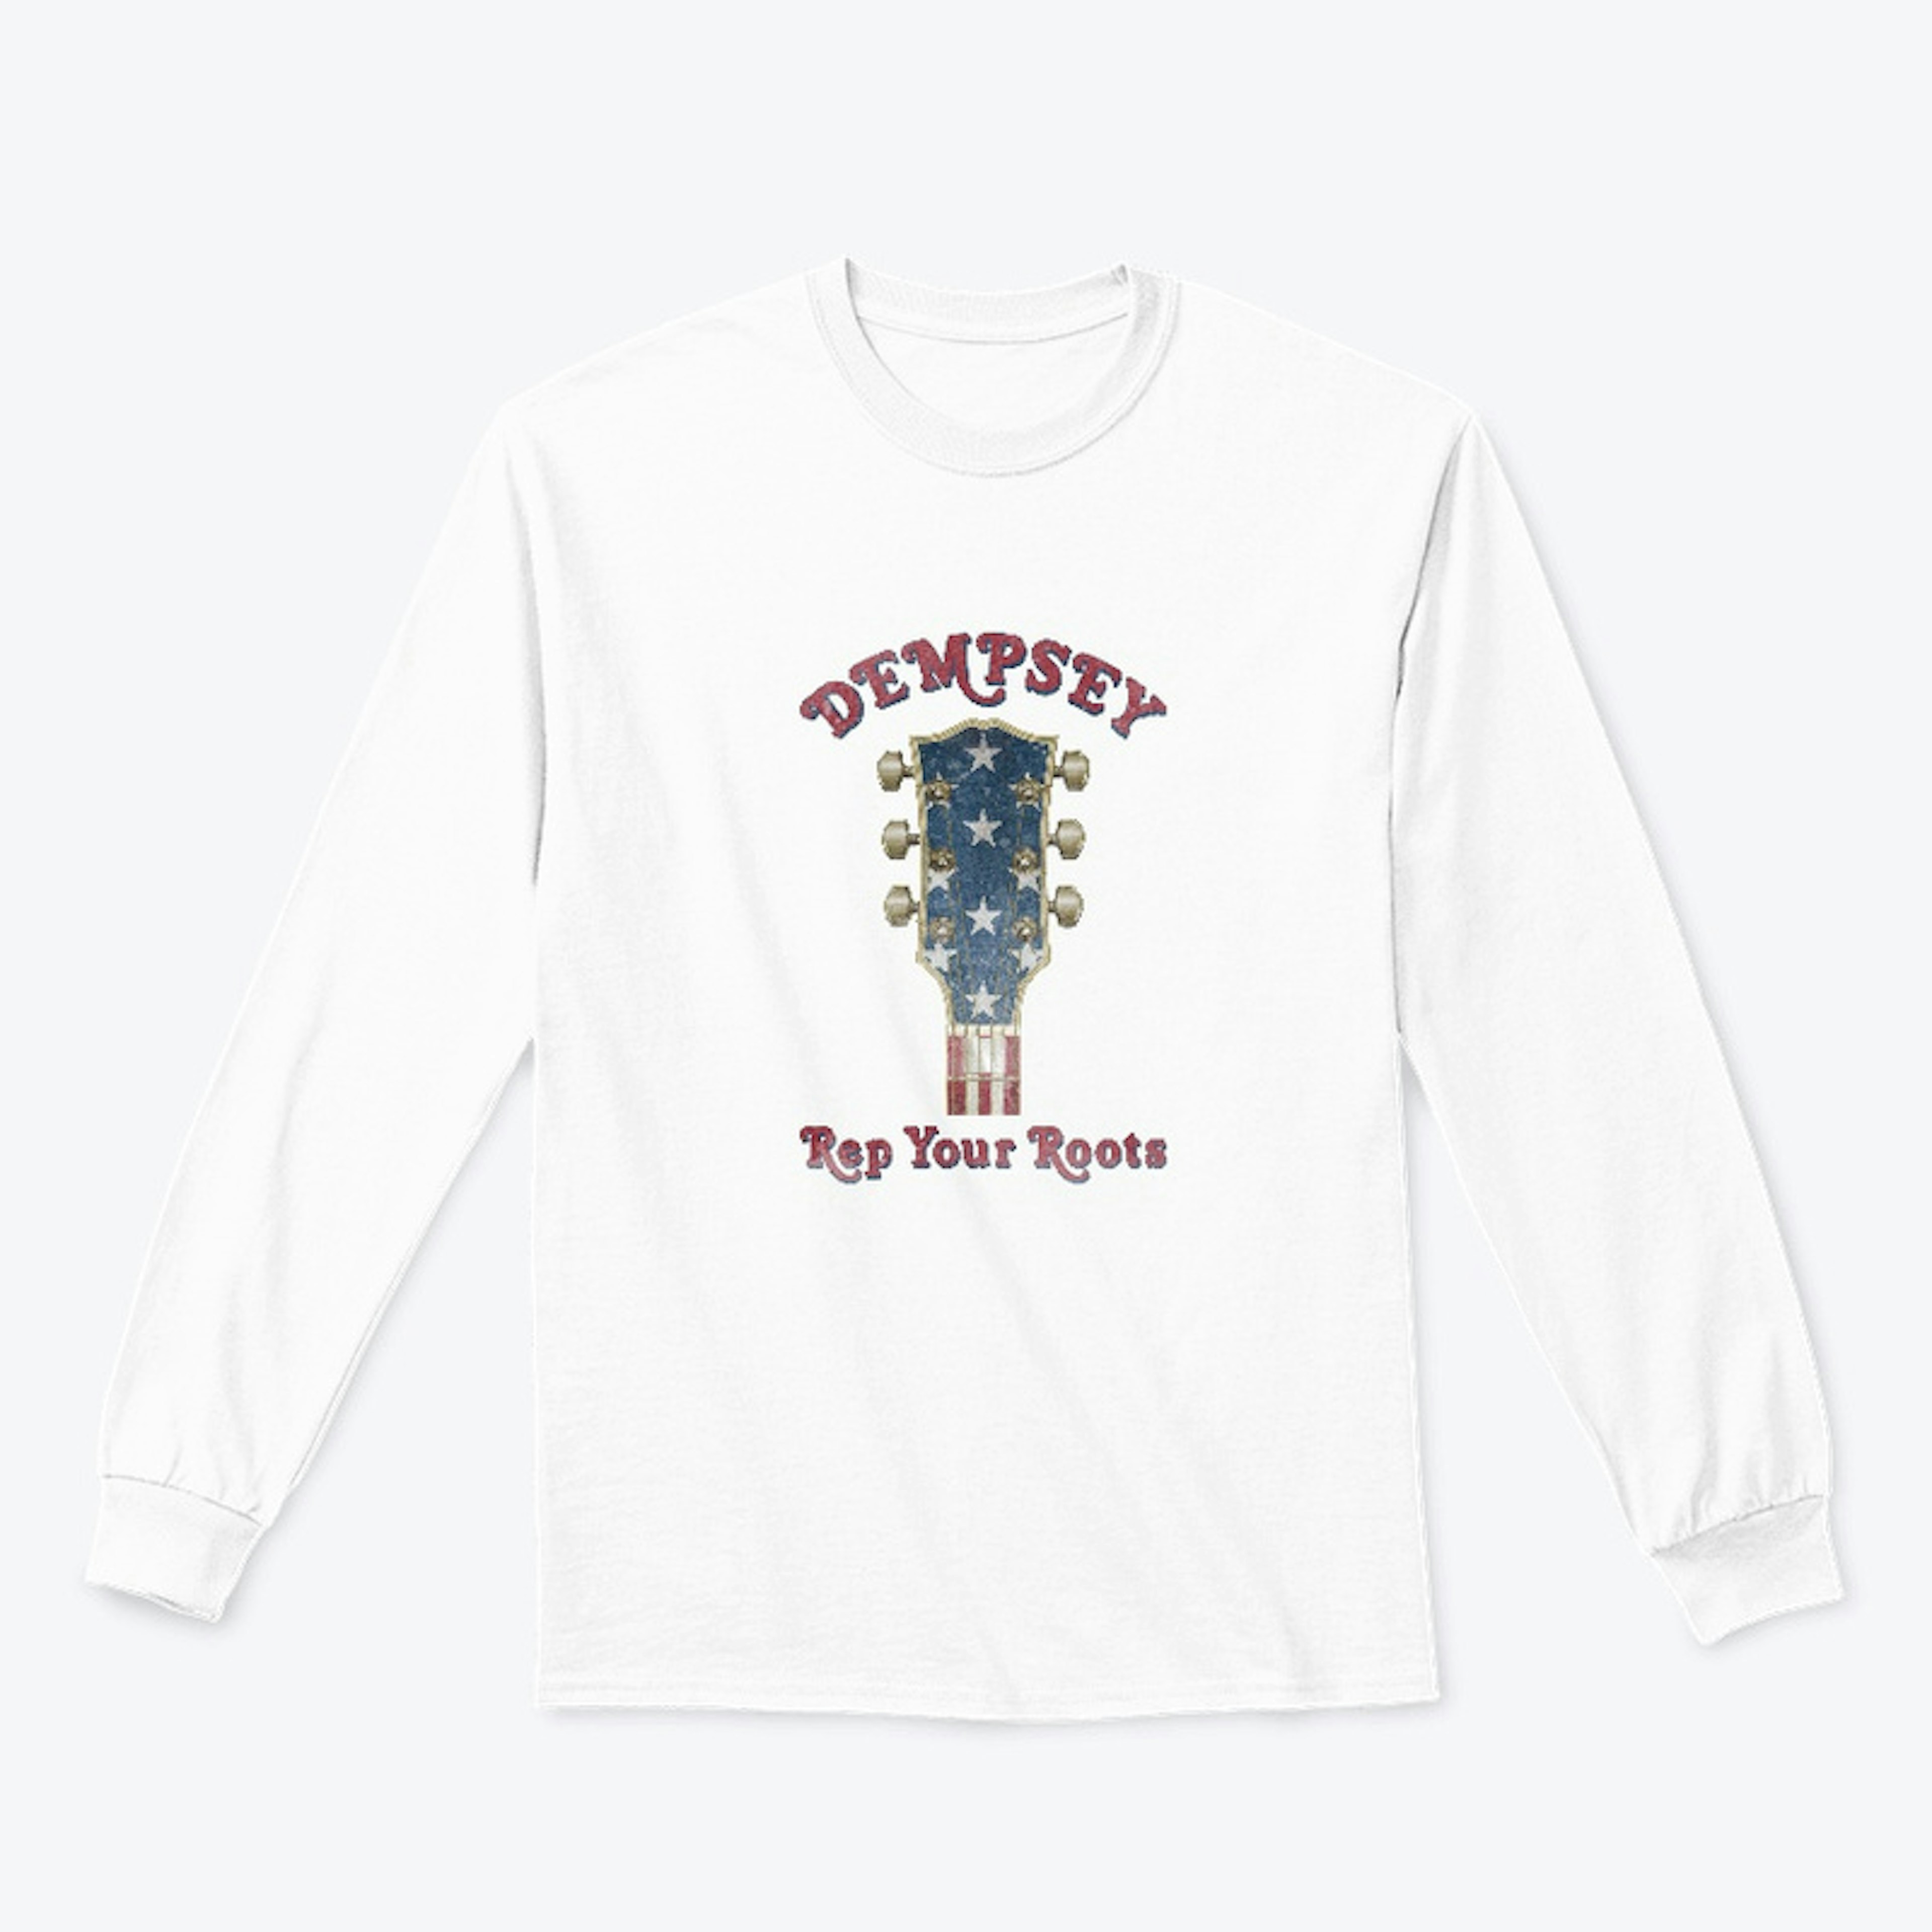 Dempsey Patriotic Guitar Collection